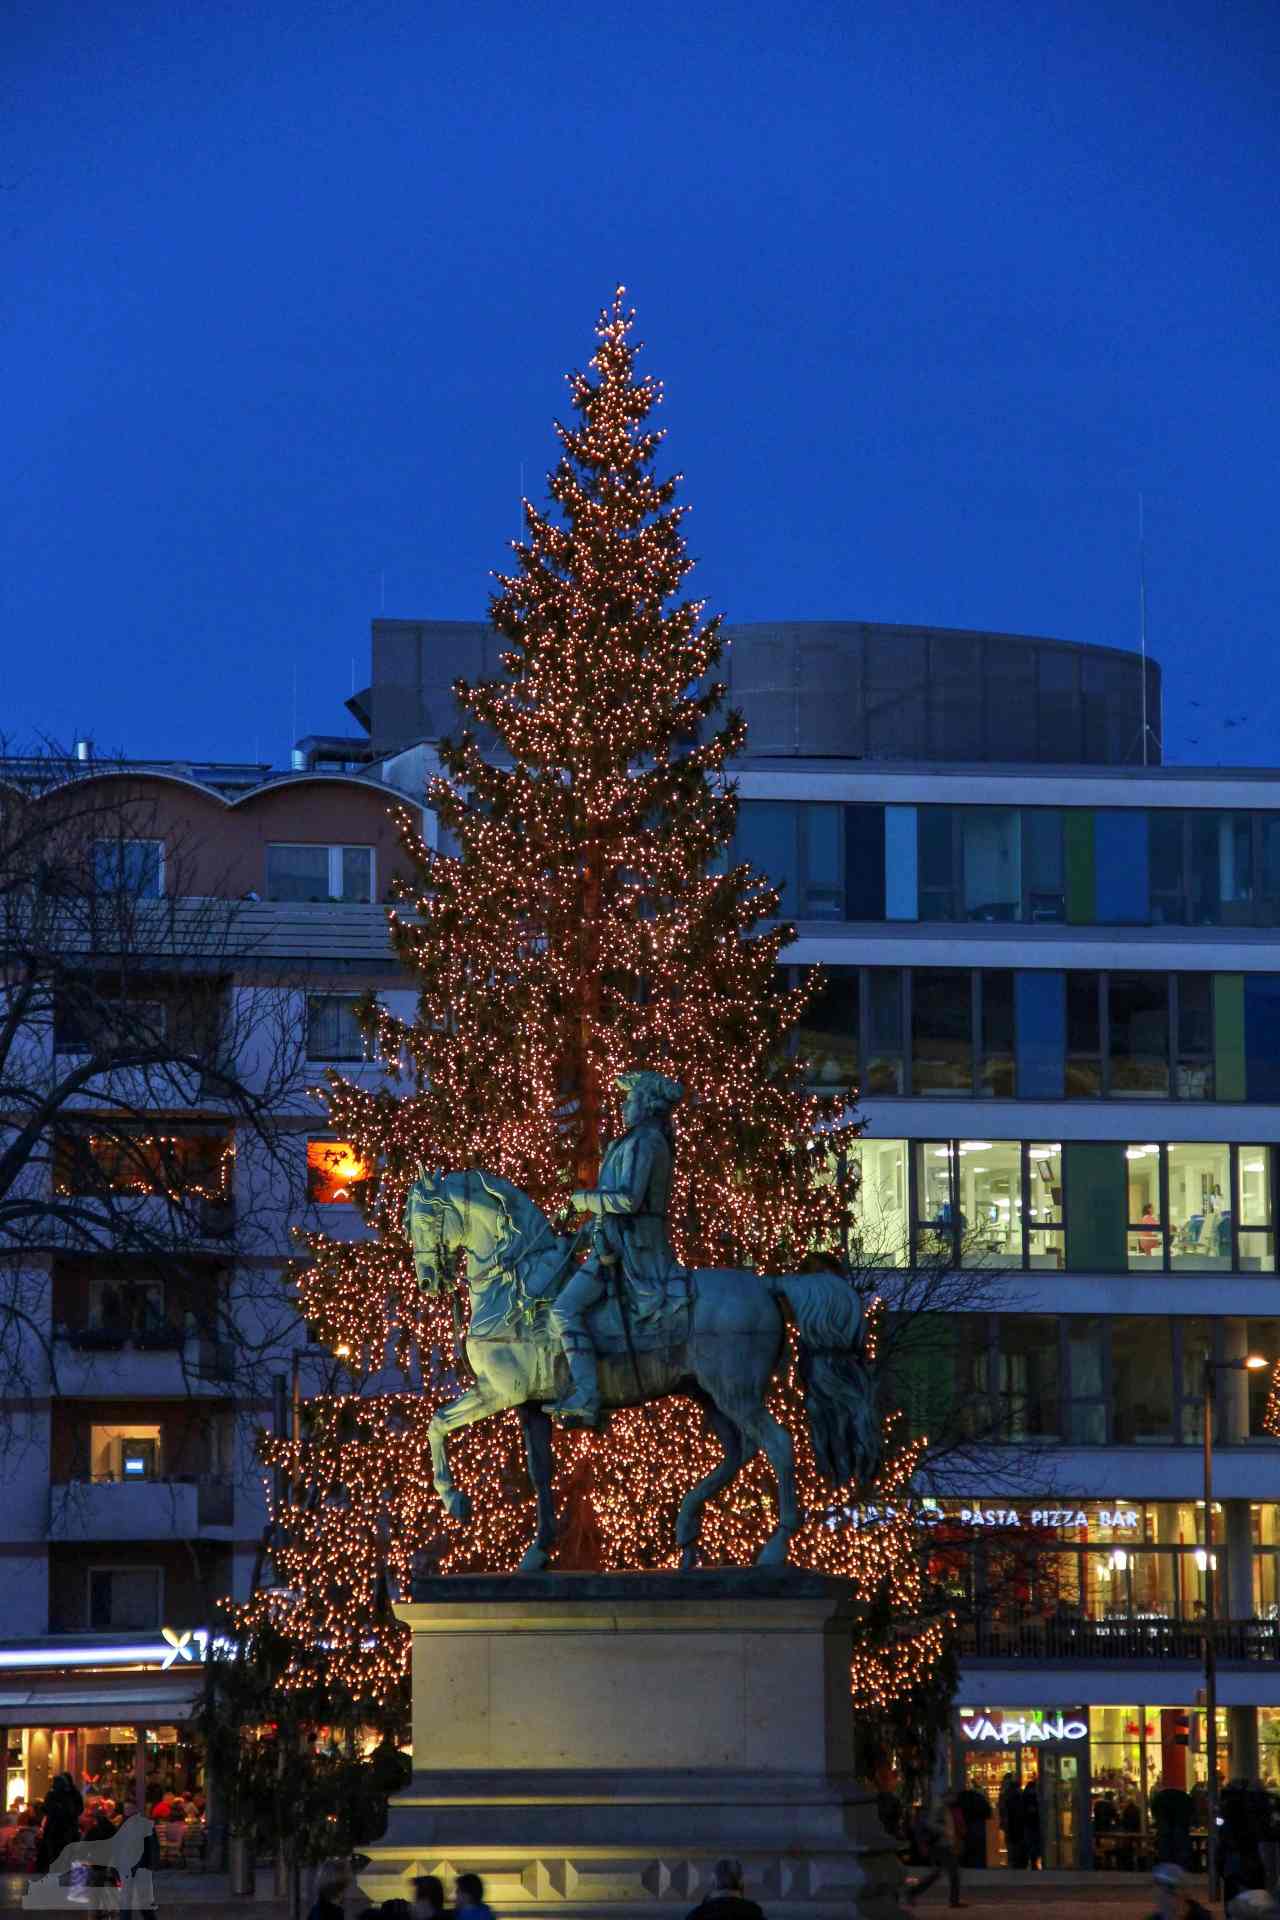 Reiterstand von Friedrich-Karl-Wilhelm vor Weihnachtsbaum